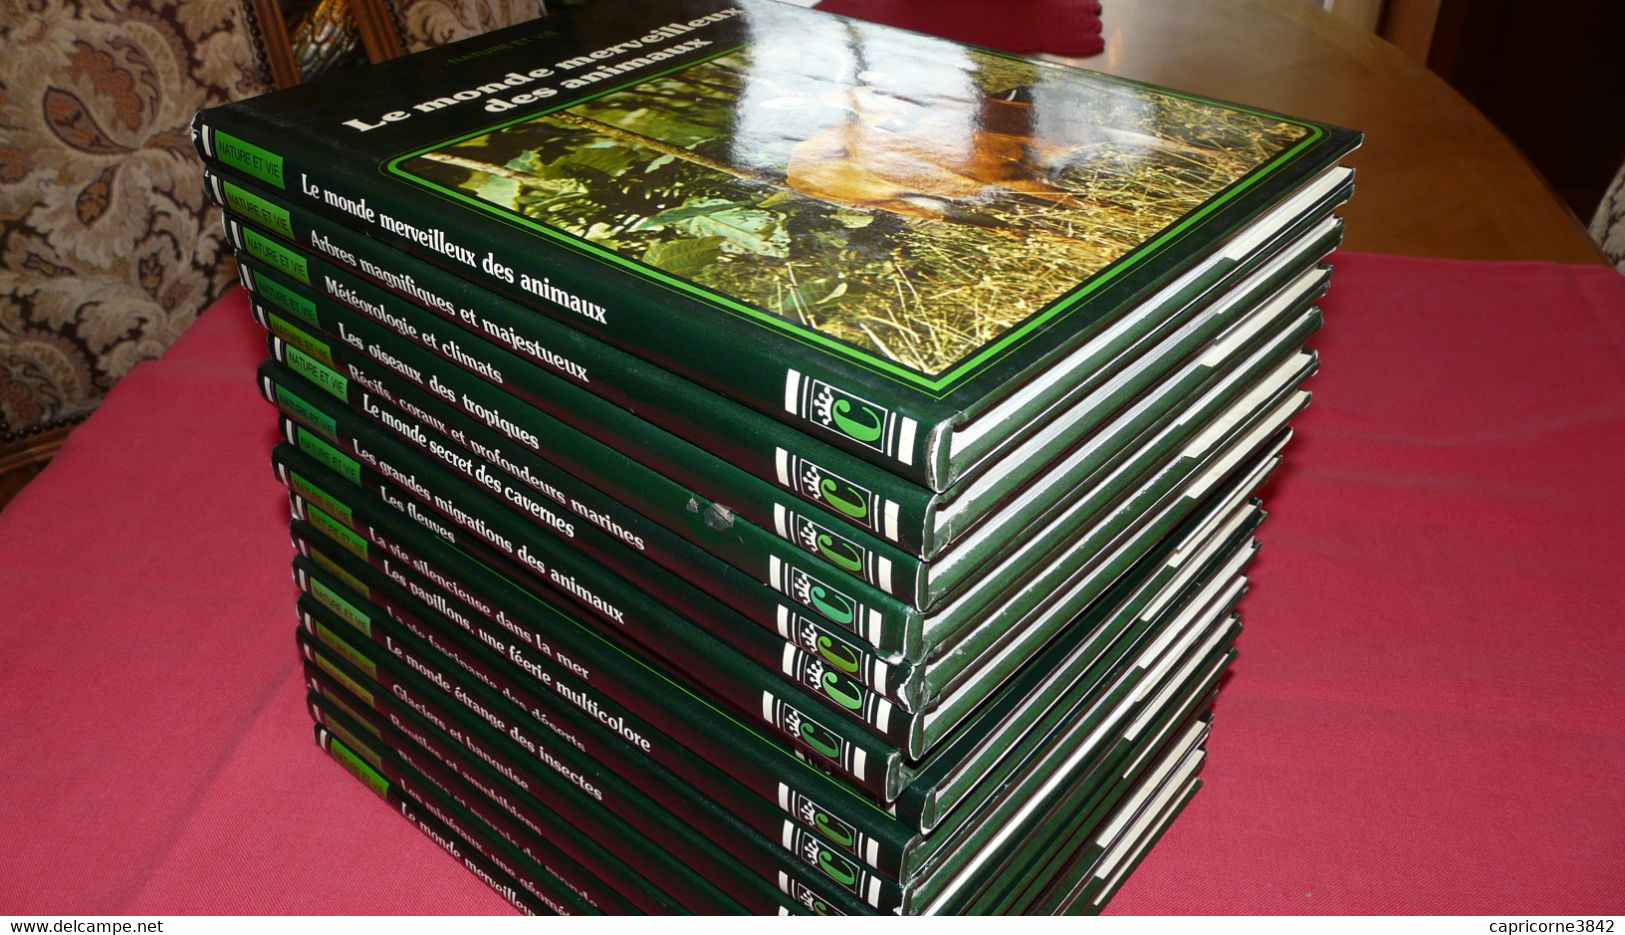 Encyclopédie 17 volumes A LA DECOUVERTE D'UN MONDE VIVANT - Collection Nature et vie - Ed. Christophe Colomb